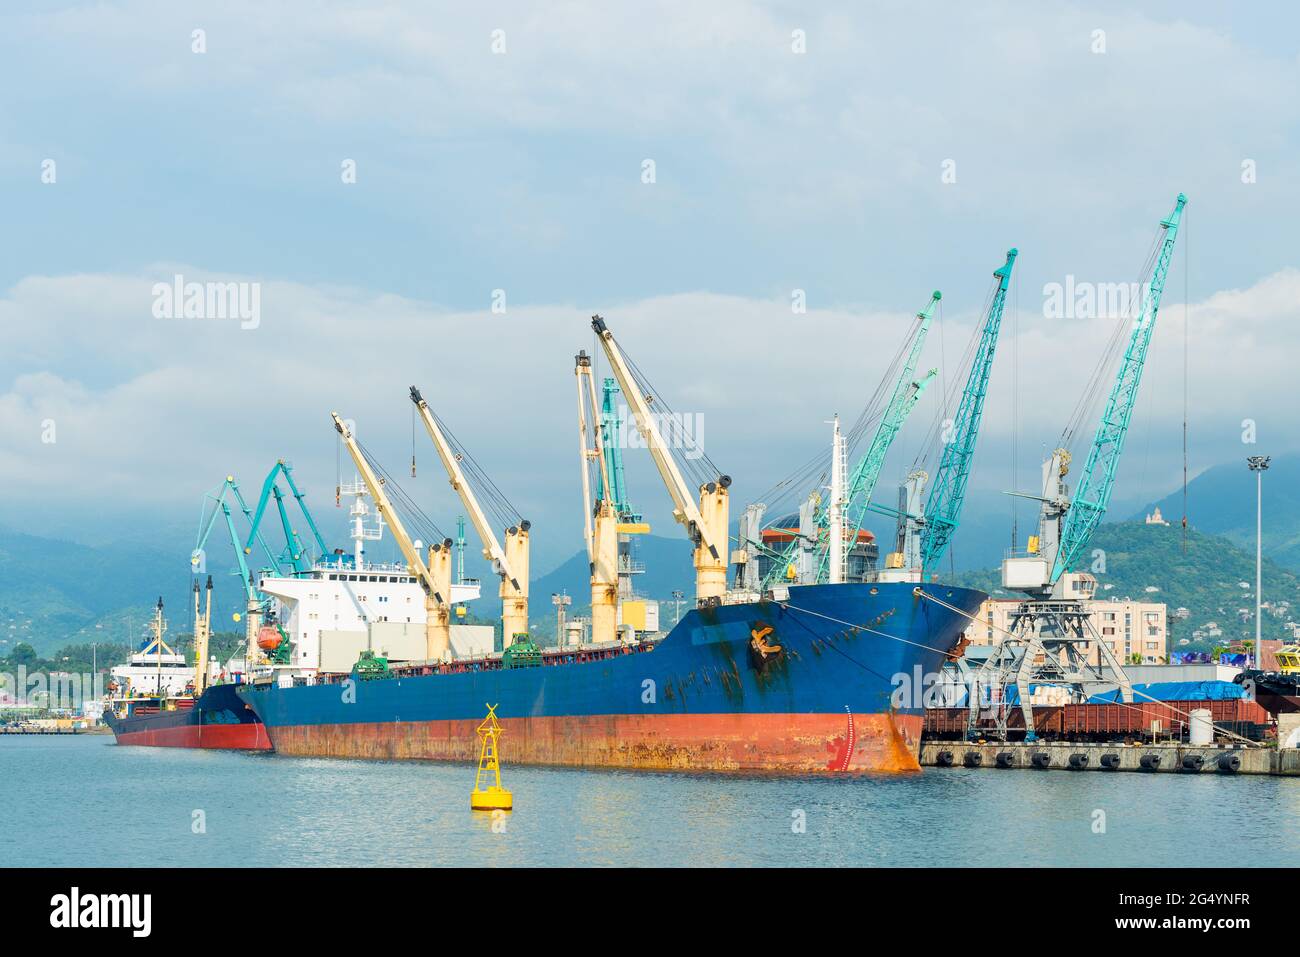 Buques de carga y grúas de carga en el puerto de una gran ciudad en el mar Foto de stock